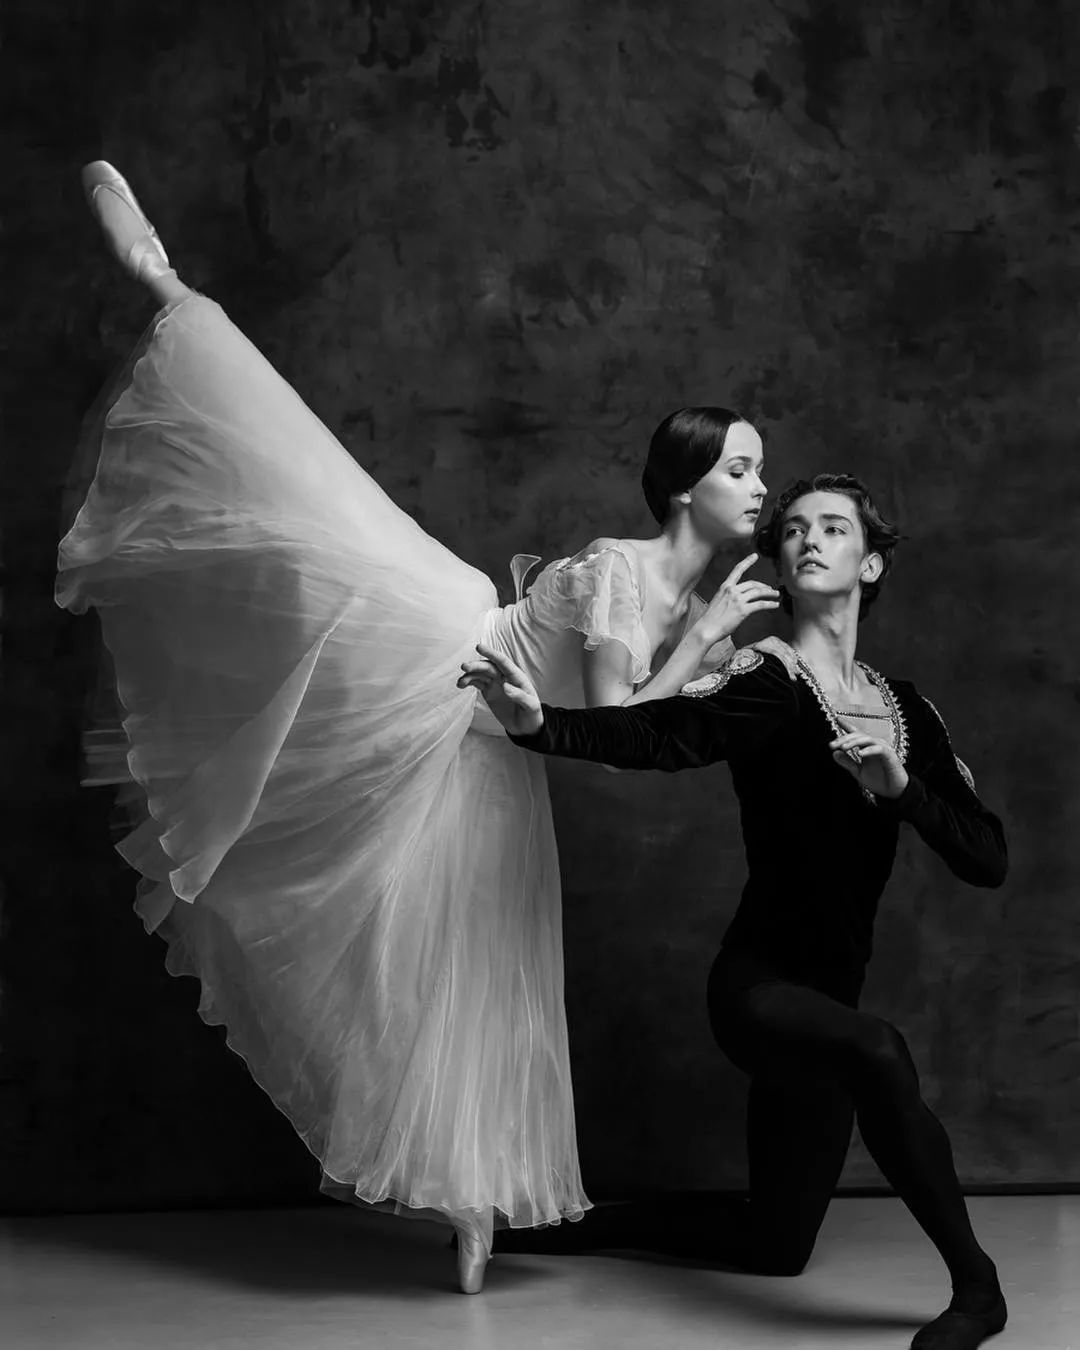 97年外国芭蕾舞少年爆红网络，明明是男人却被赞“美得像天鹅”？